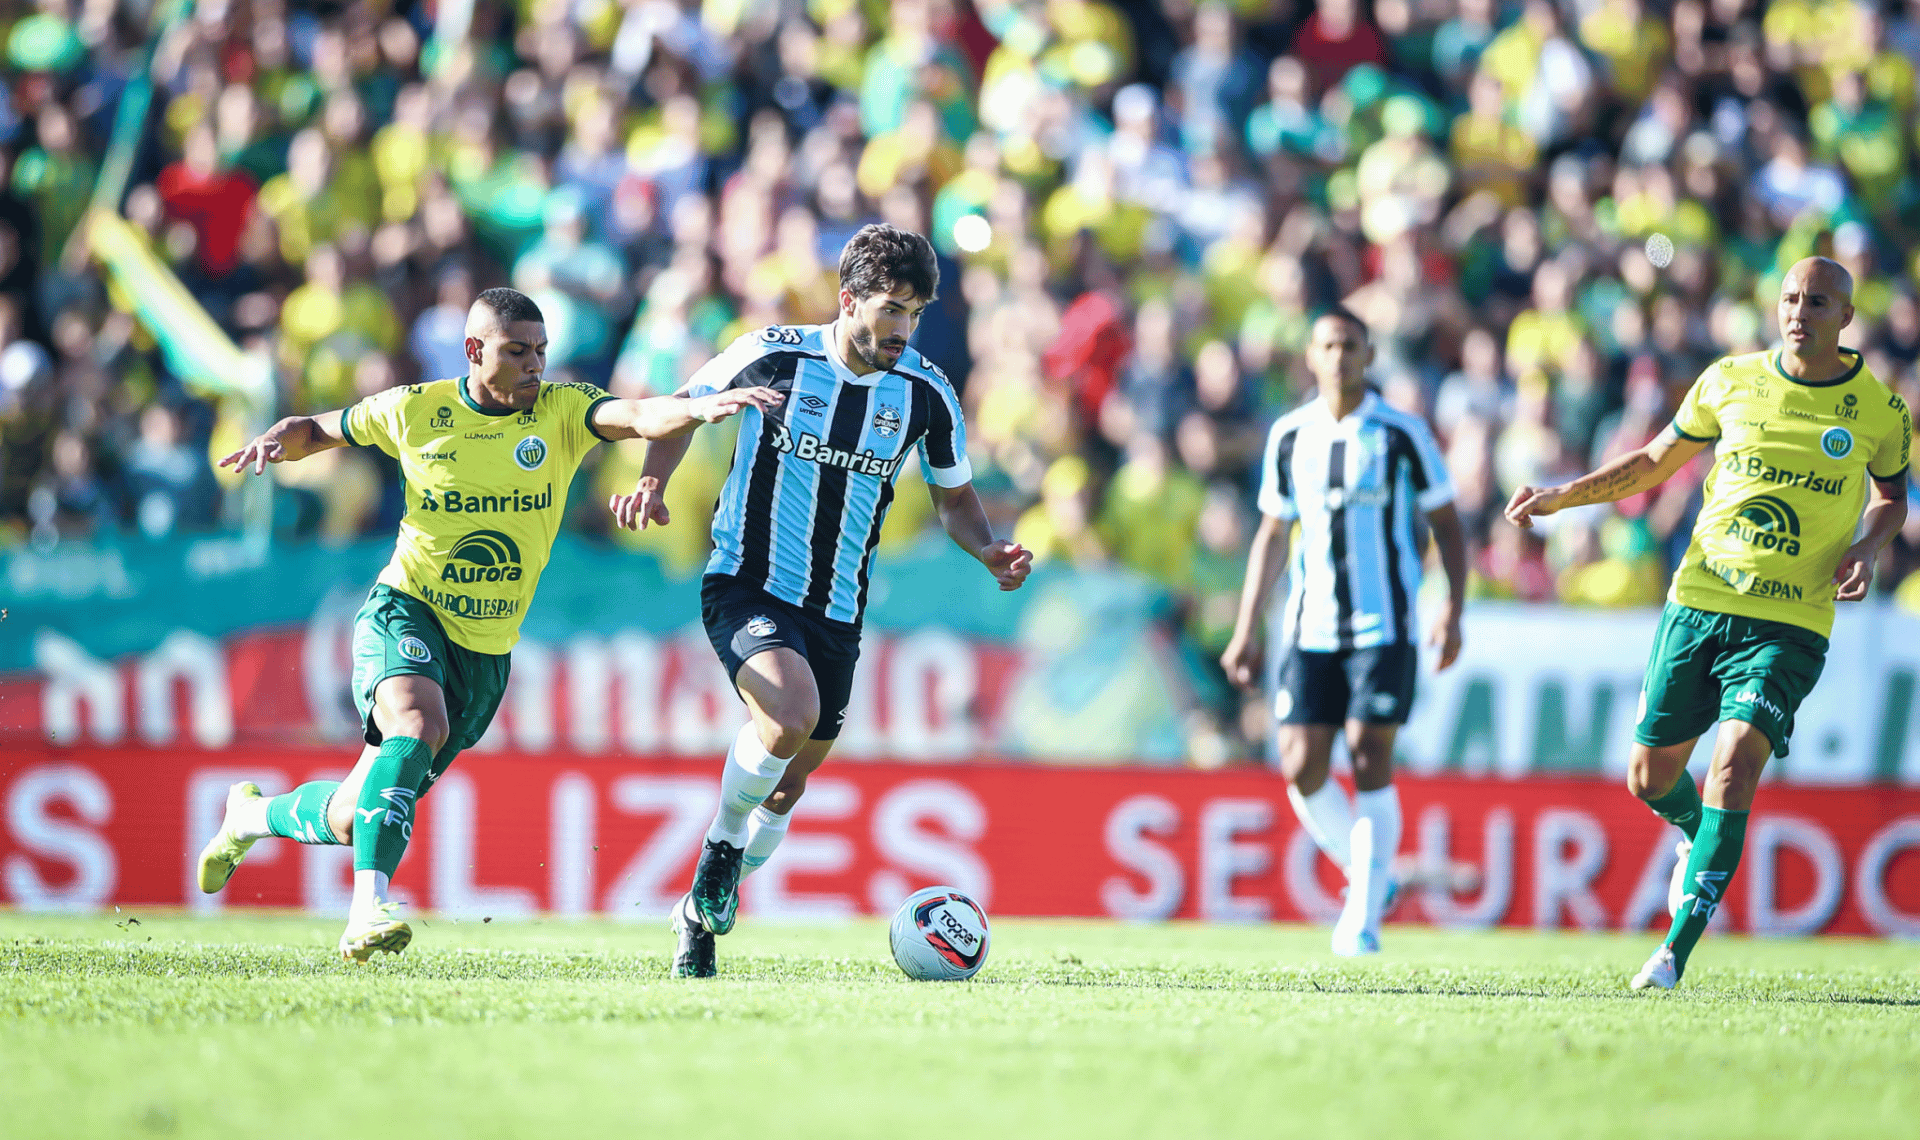 Ypiranga vs. Grêmio